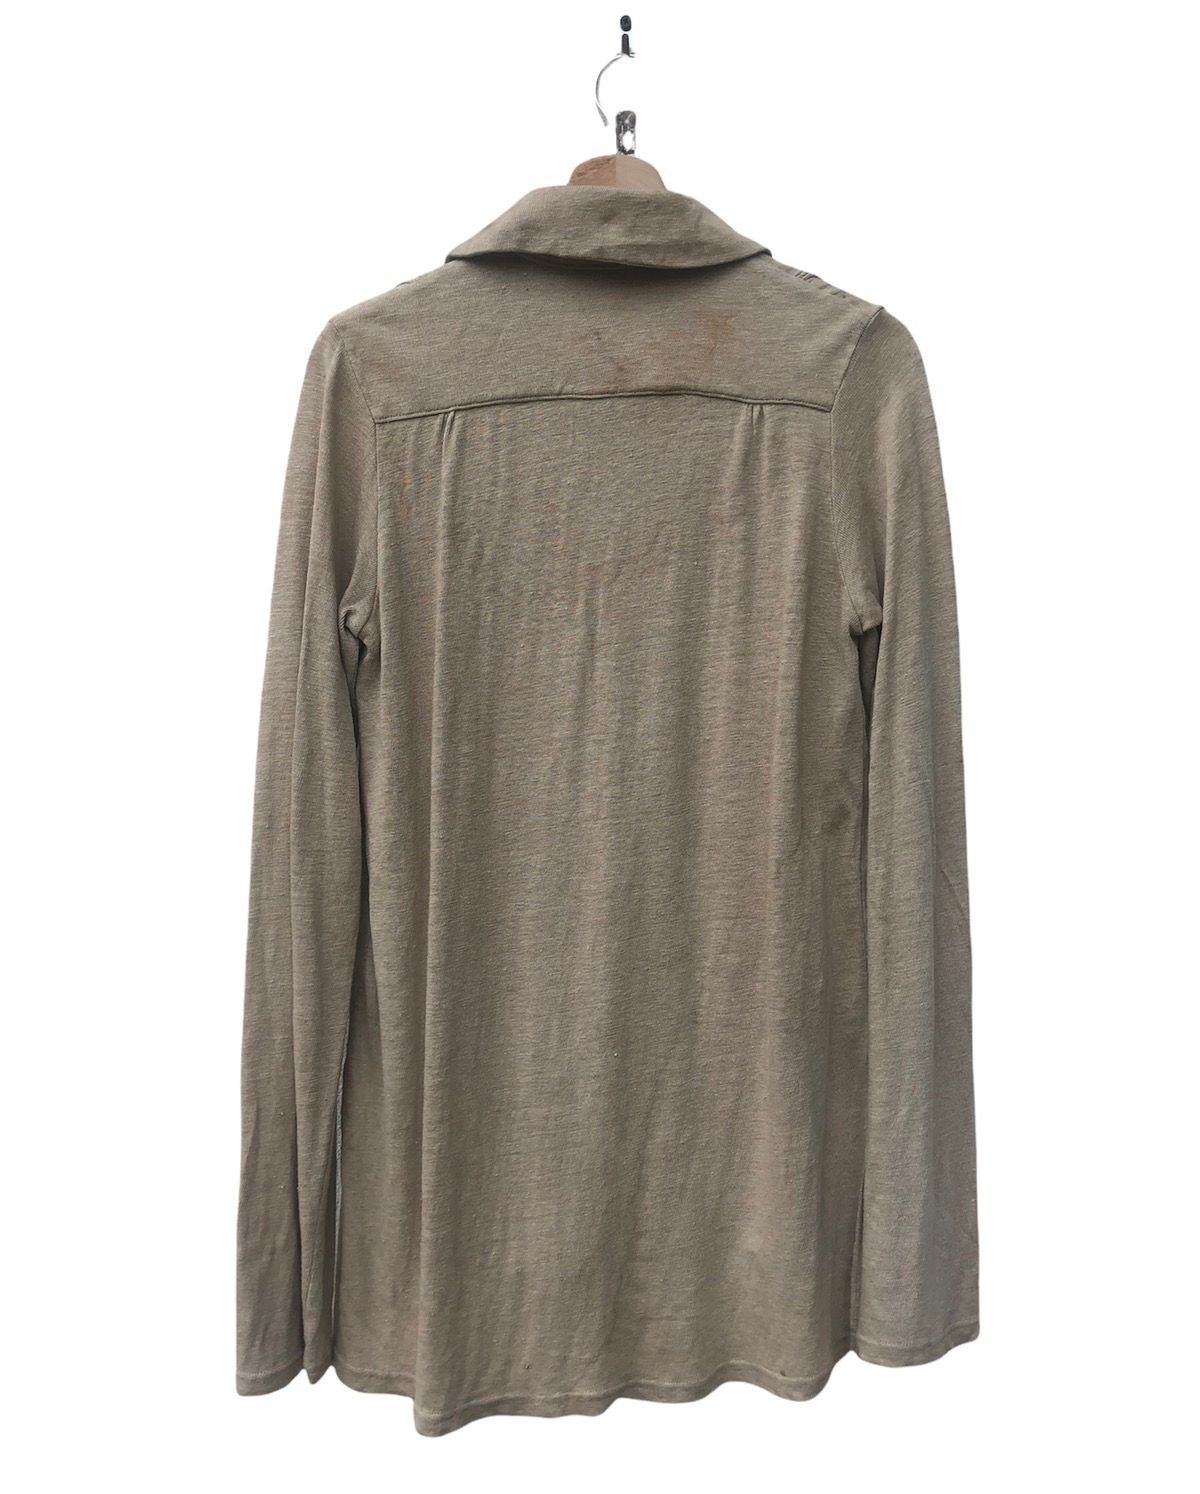 👉Kapital Kiro Hirata Long Sleeve Cardigan Sweater - 2